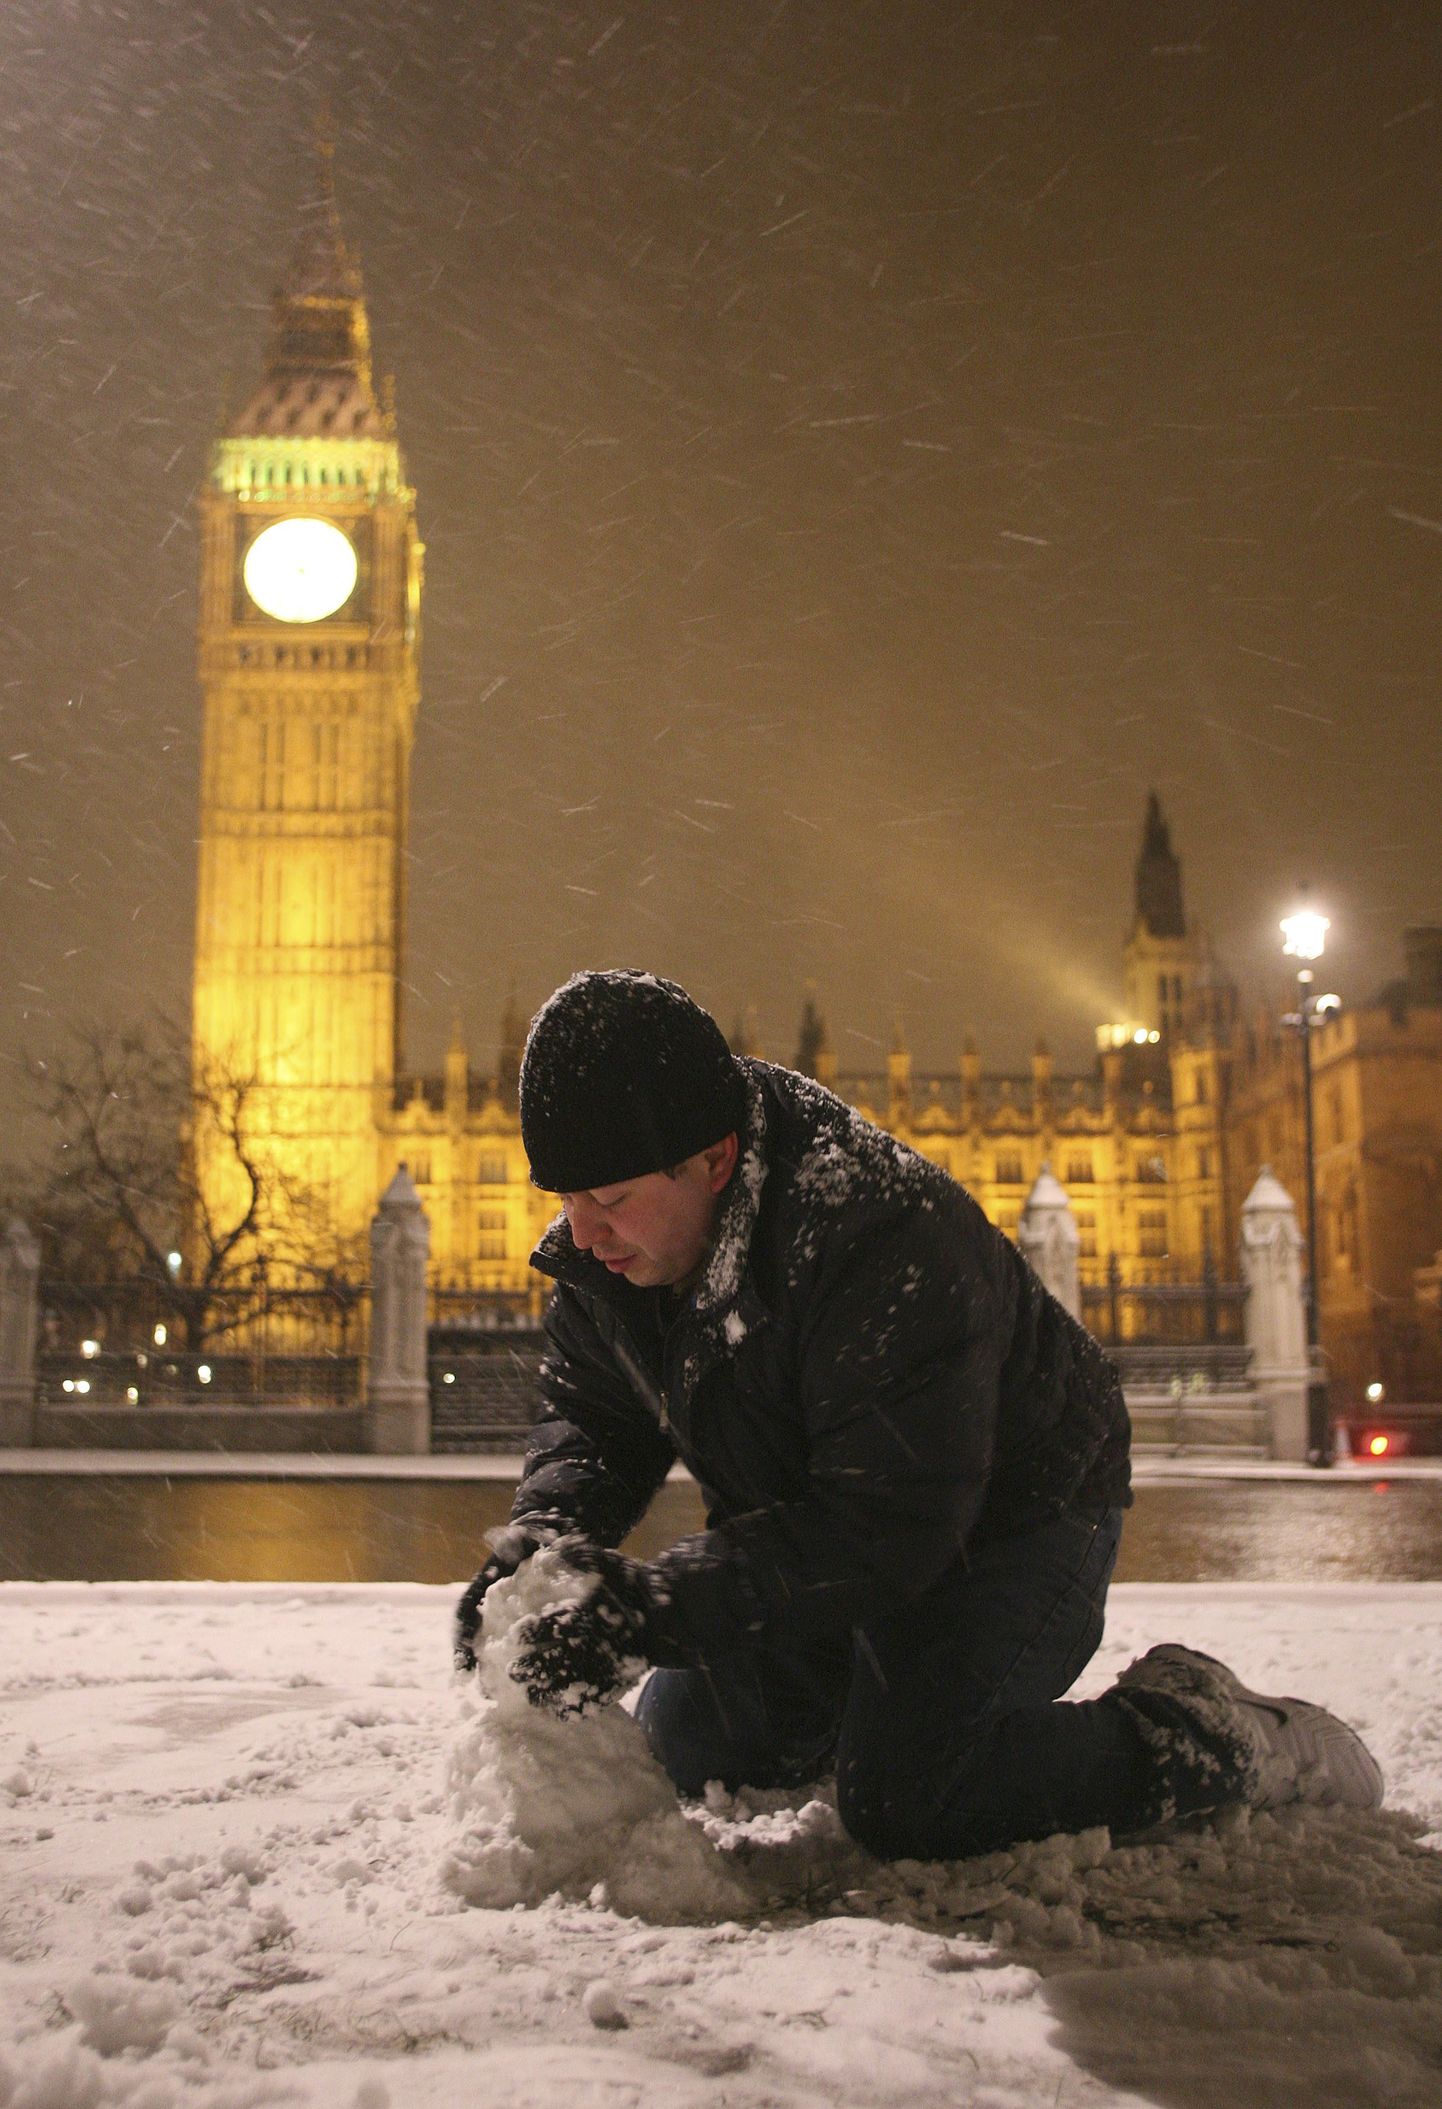 Турист из Мексики Роджер Аларкон делает снеговика в центре Лондона после снегопада 1 февраля.